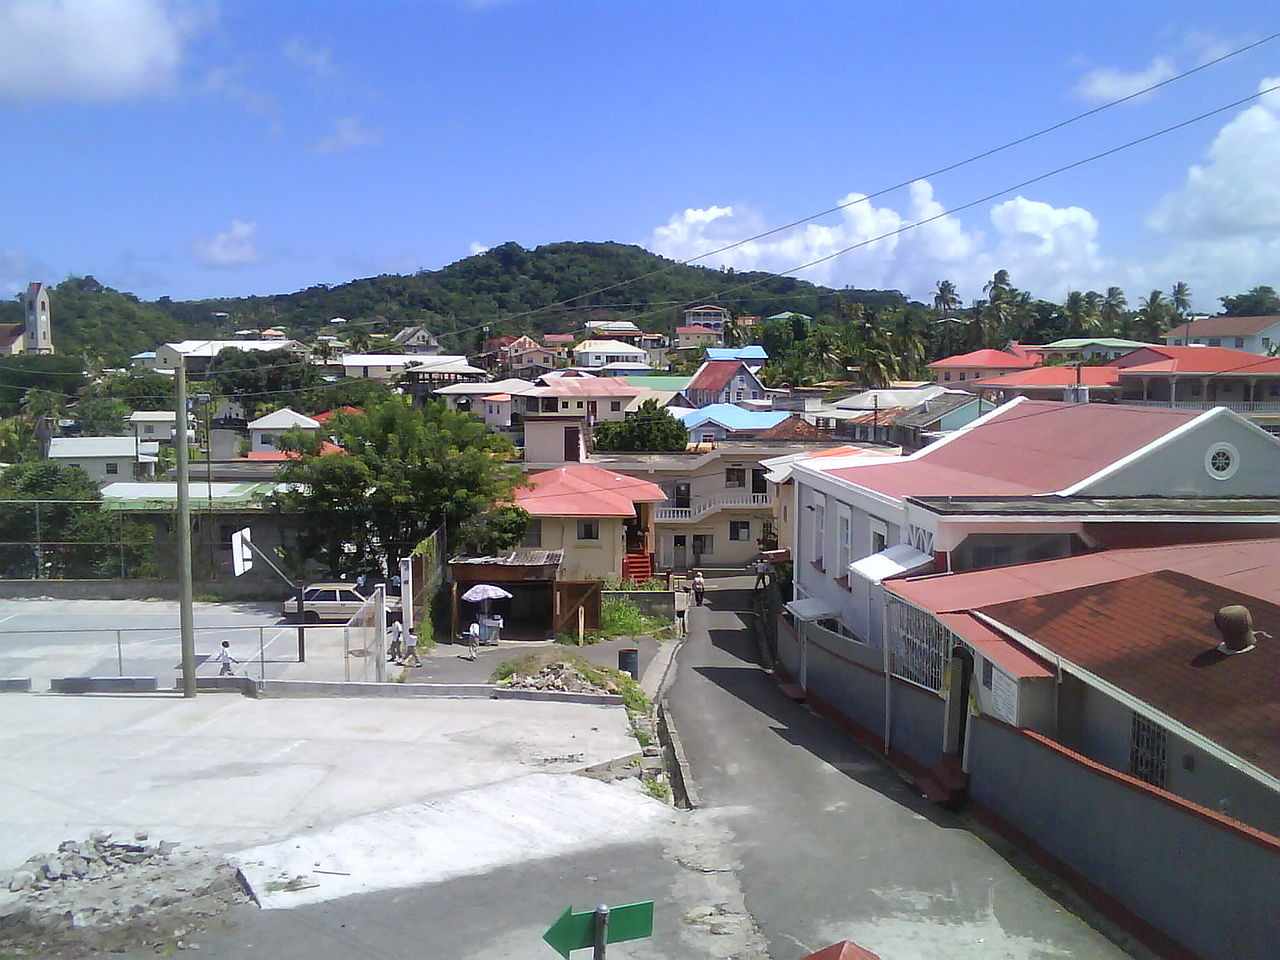 Sauteurs, Grenada